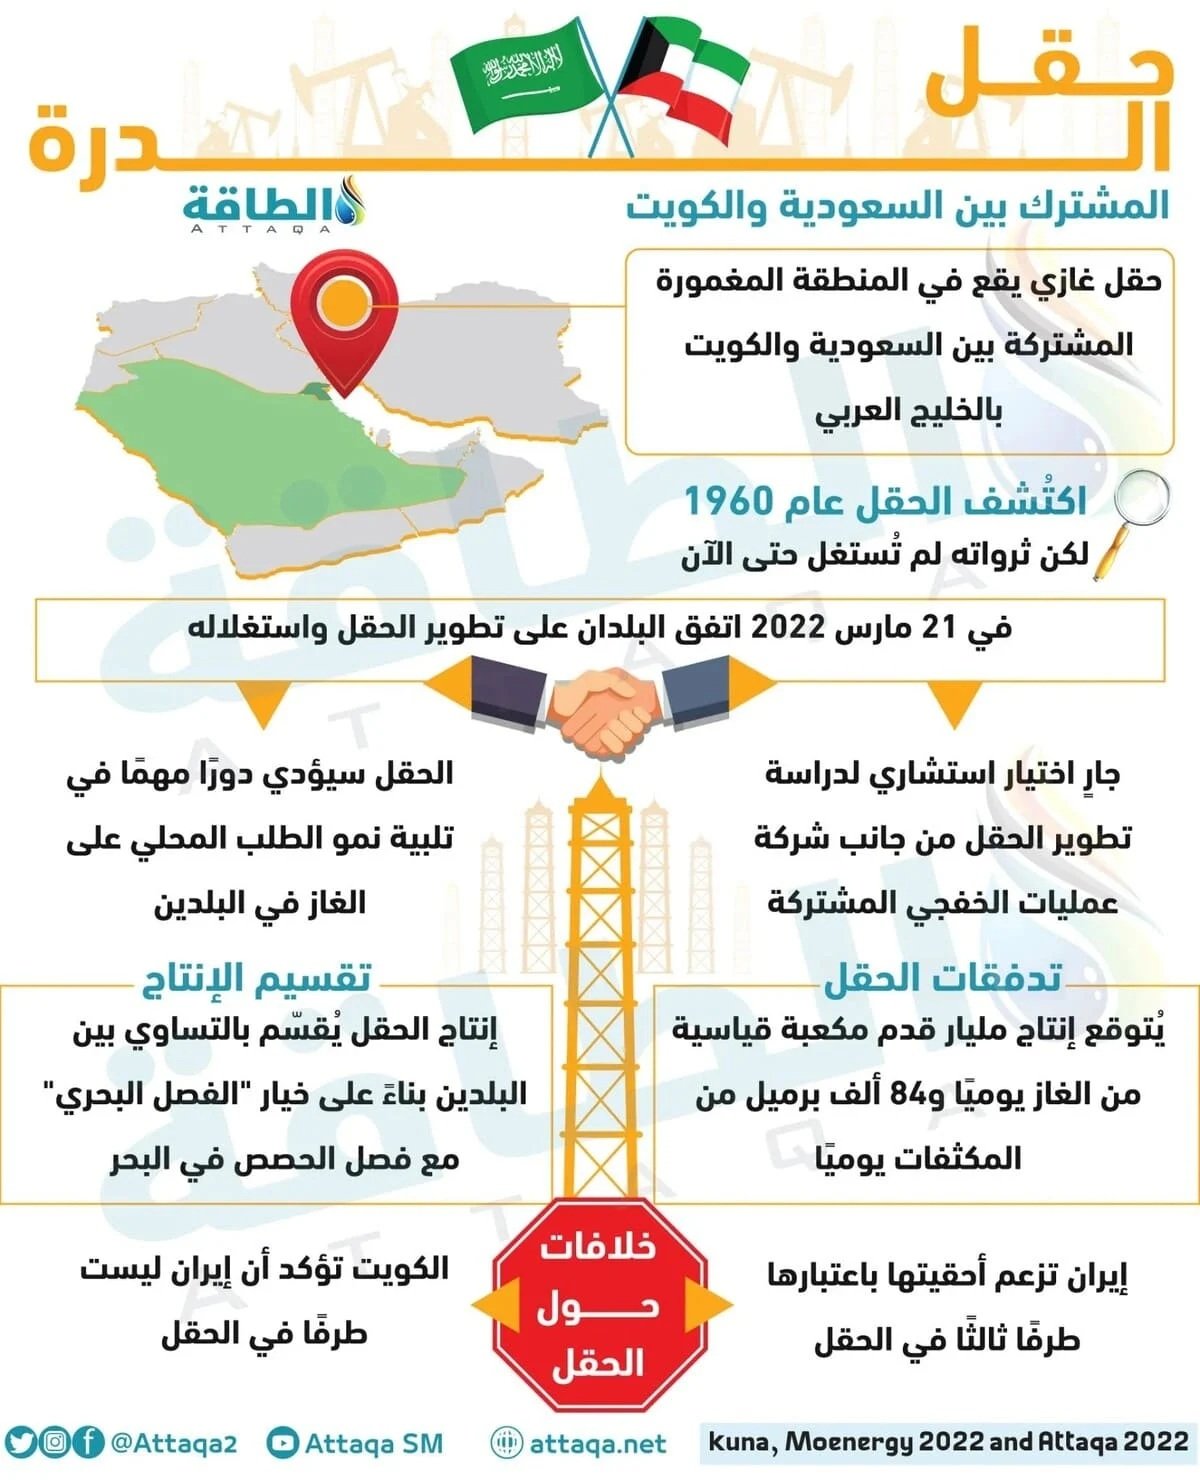 أبرز المعلومات عن حقل الدرة المشترك بين الكويت والسعودية